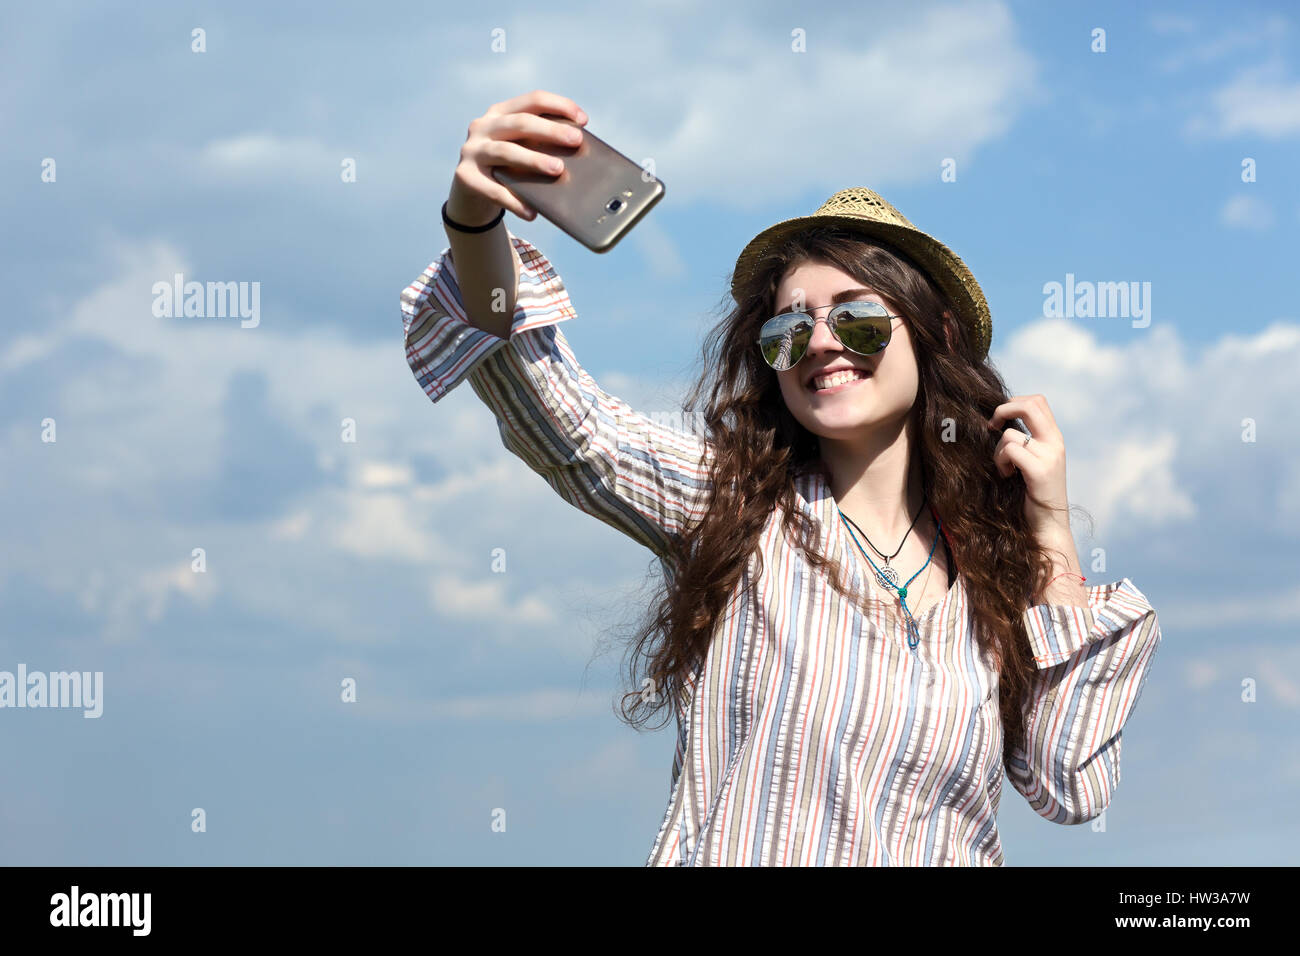 Niña Ropa de hippie camisa Hat gafas de sol y otros accesorios tomando fotos de autorretrato en la cámara del teléfono móvil en el cielo azul y suma Fotografía de